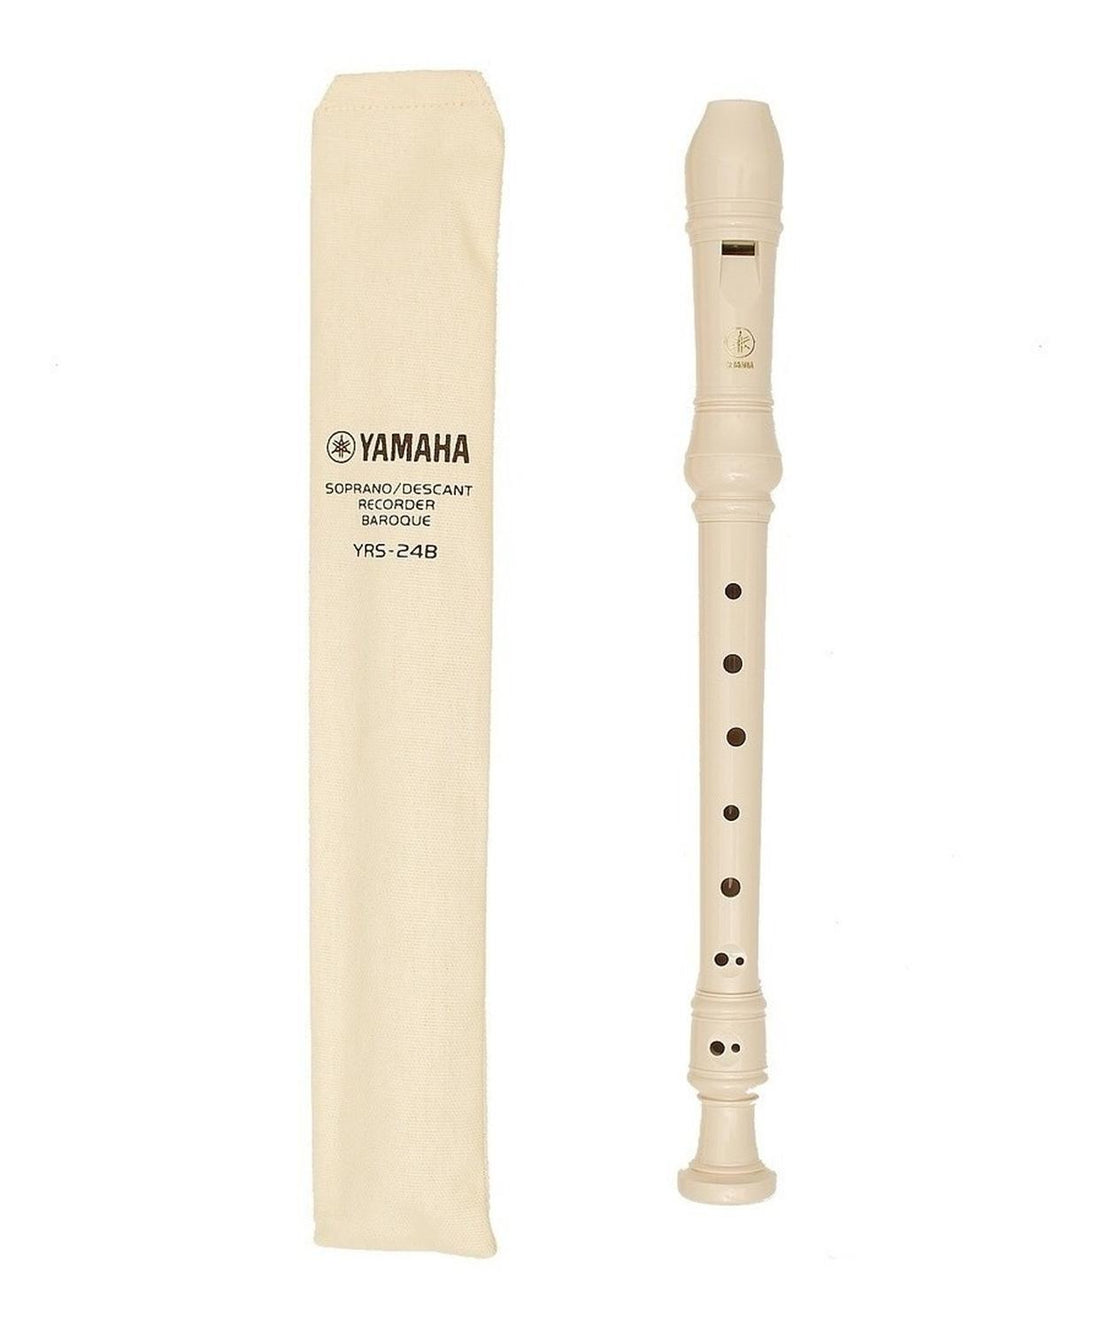 Yamaha Flauta Dulce Soprano Escolar En C Yrs-24b